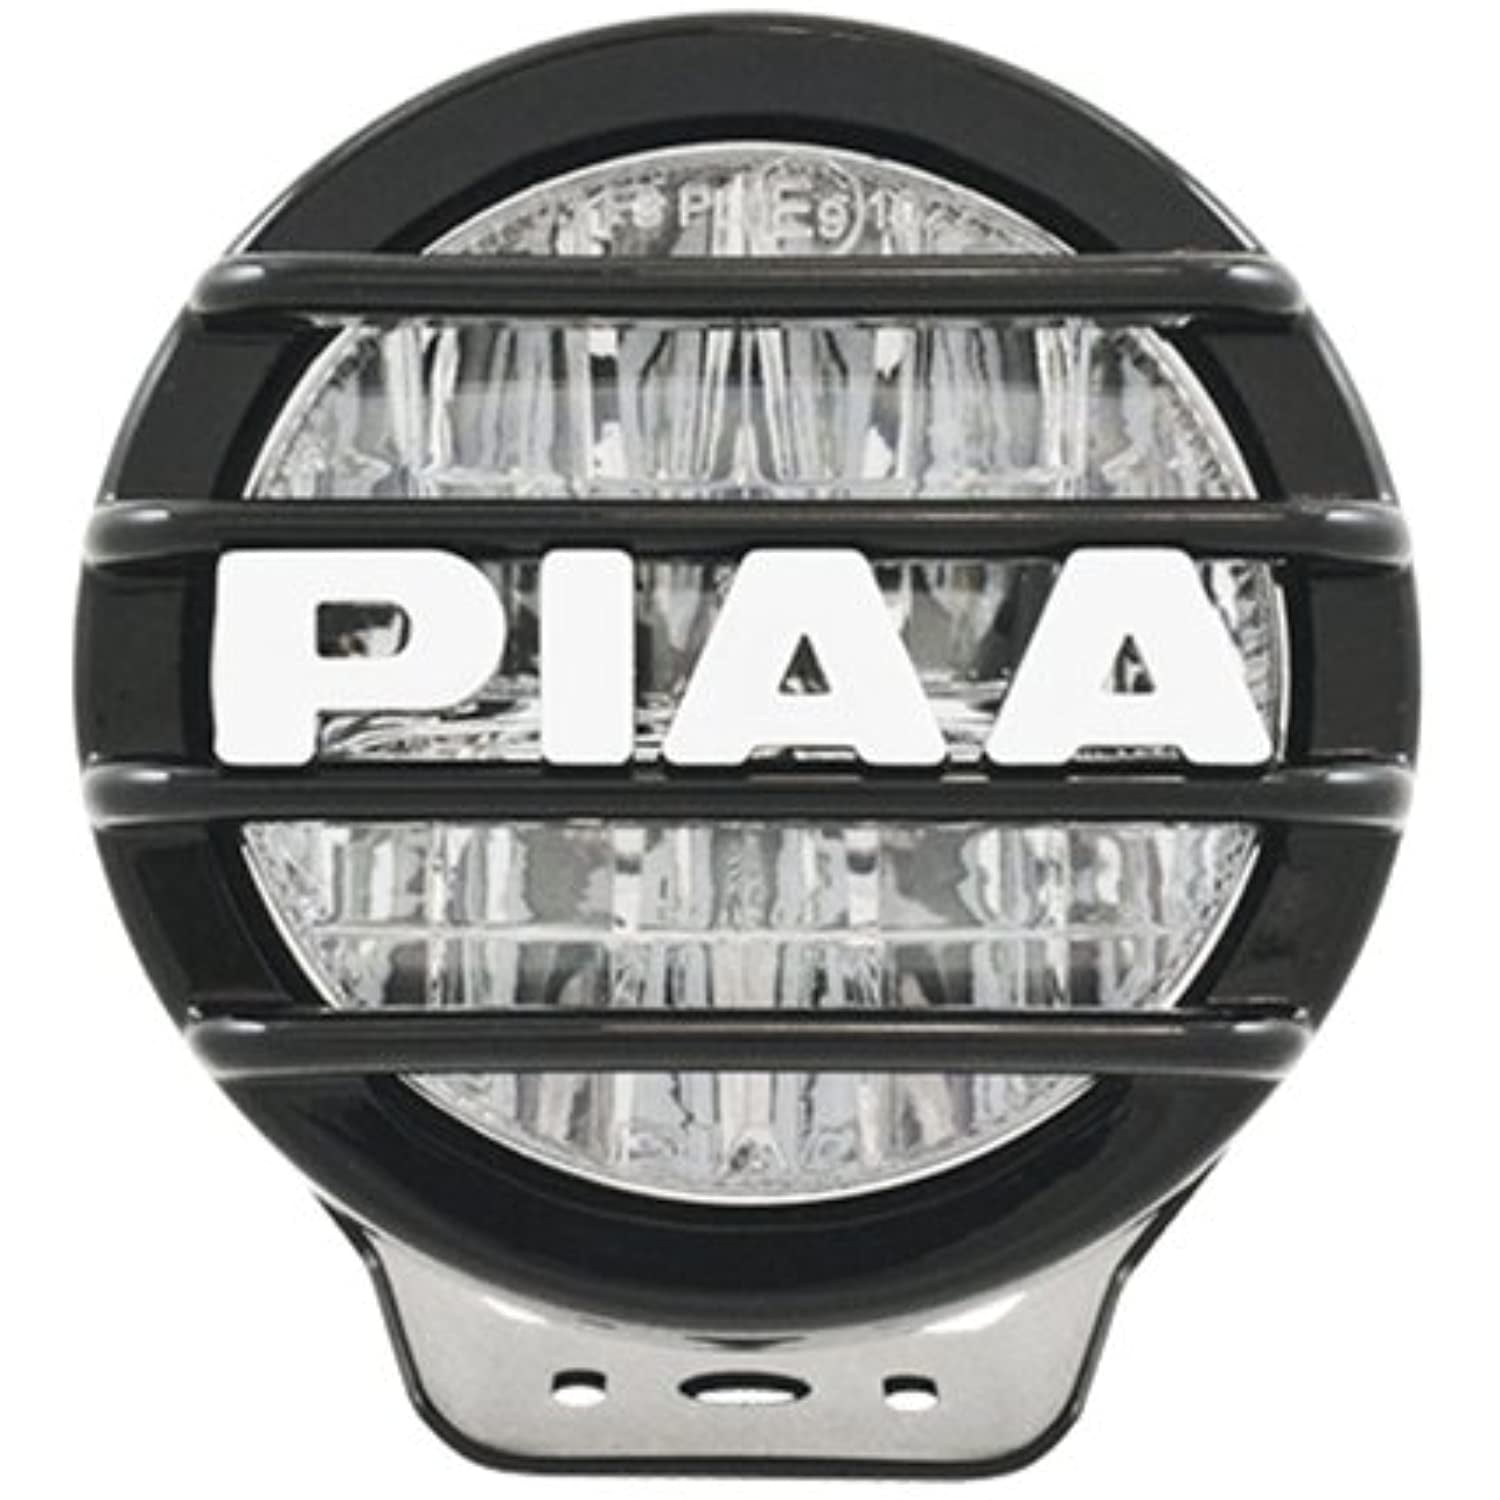 PIAA 後付けランプ LED フォグ配光 6000K 4500cd LP530シリーズ 2個入 12V/8W 耐振10G、防水・防塵IPX7対応  ECE、SAE規格準拠 DK537BEG 割引一掃 | gaemcoperu.com